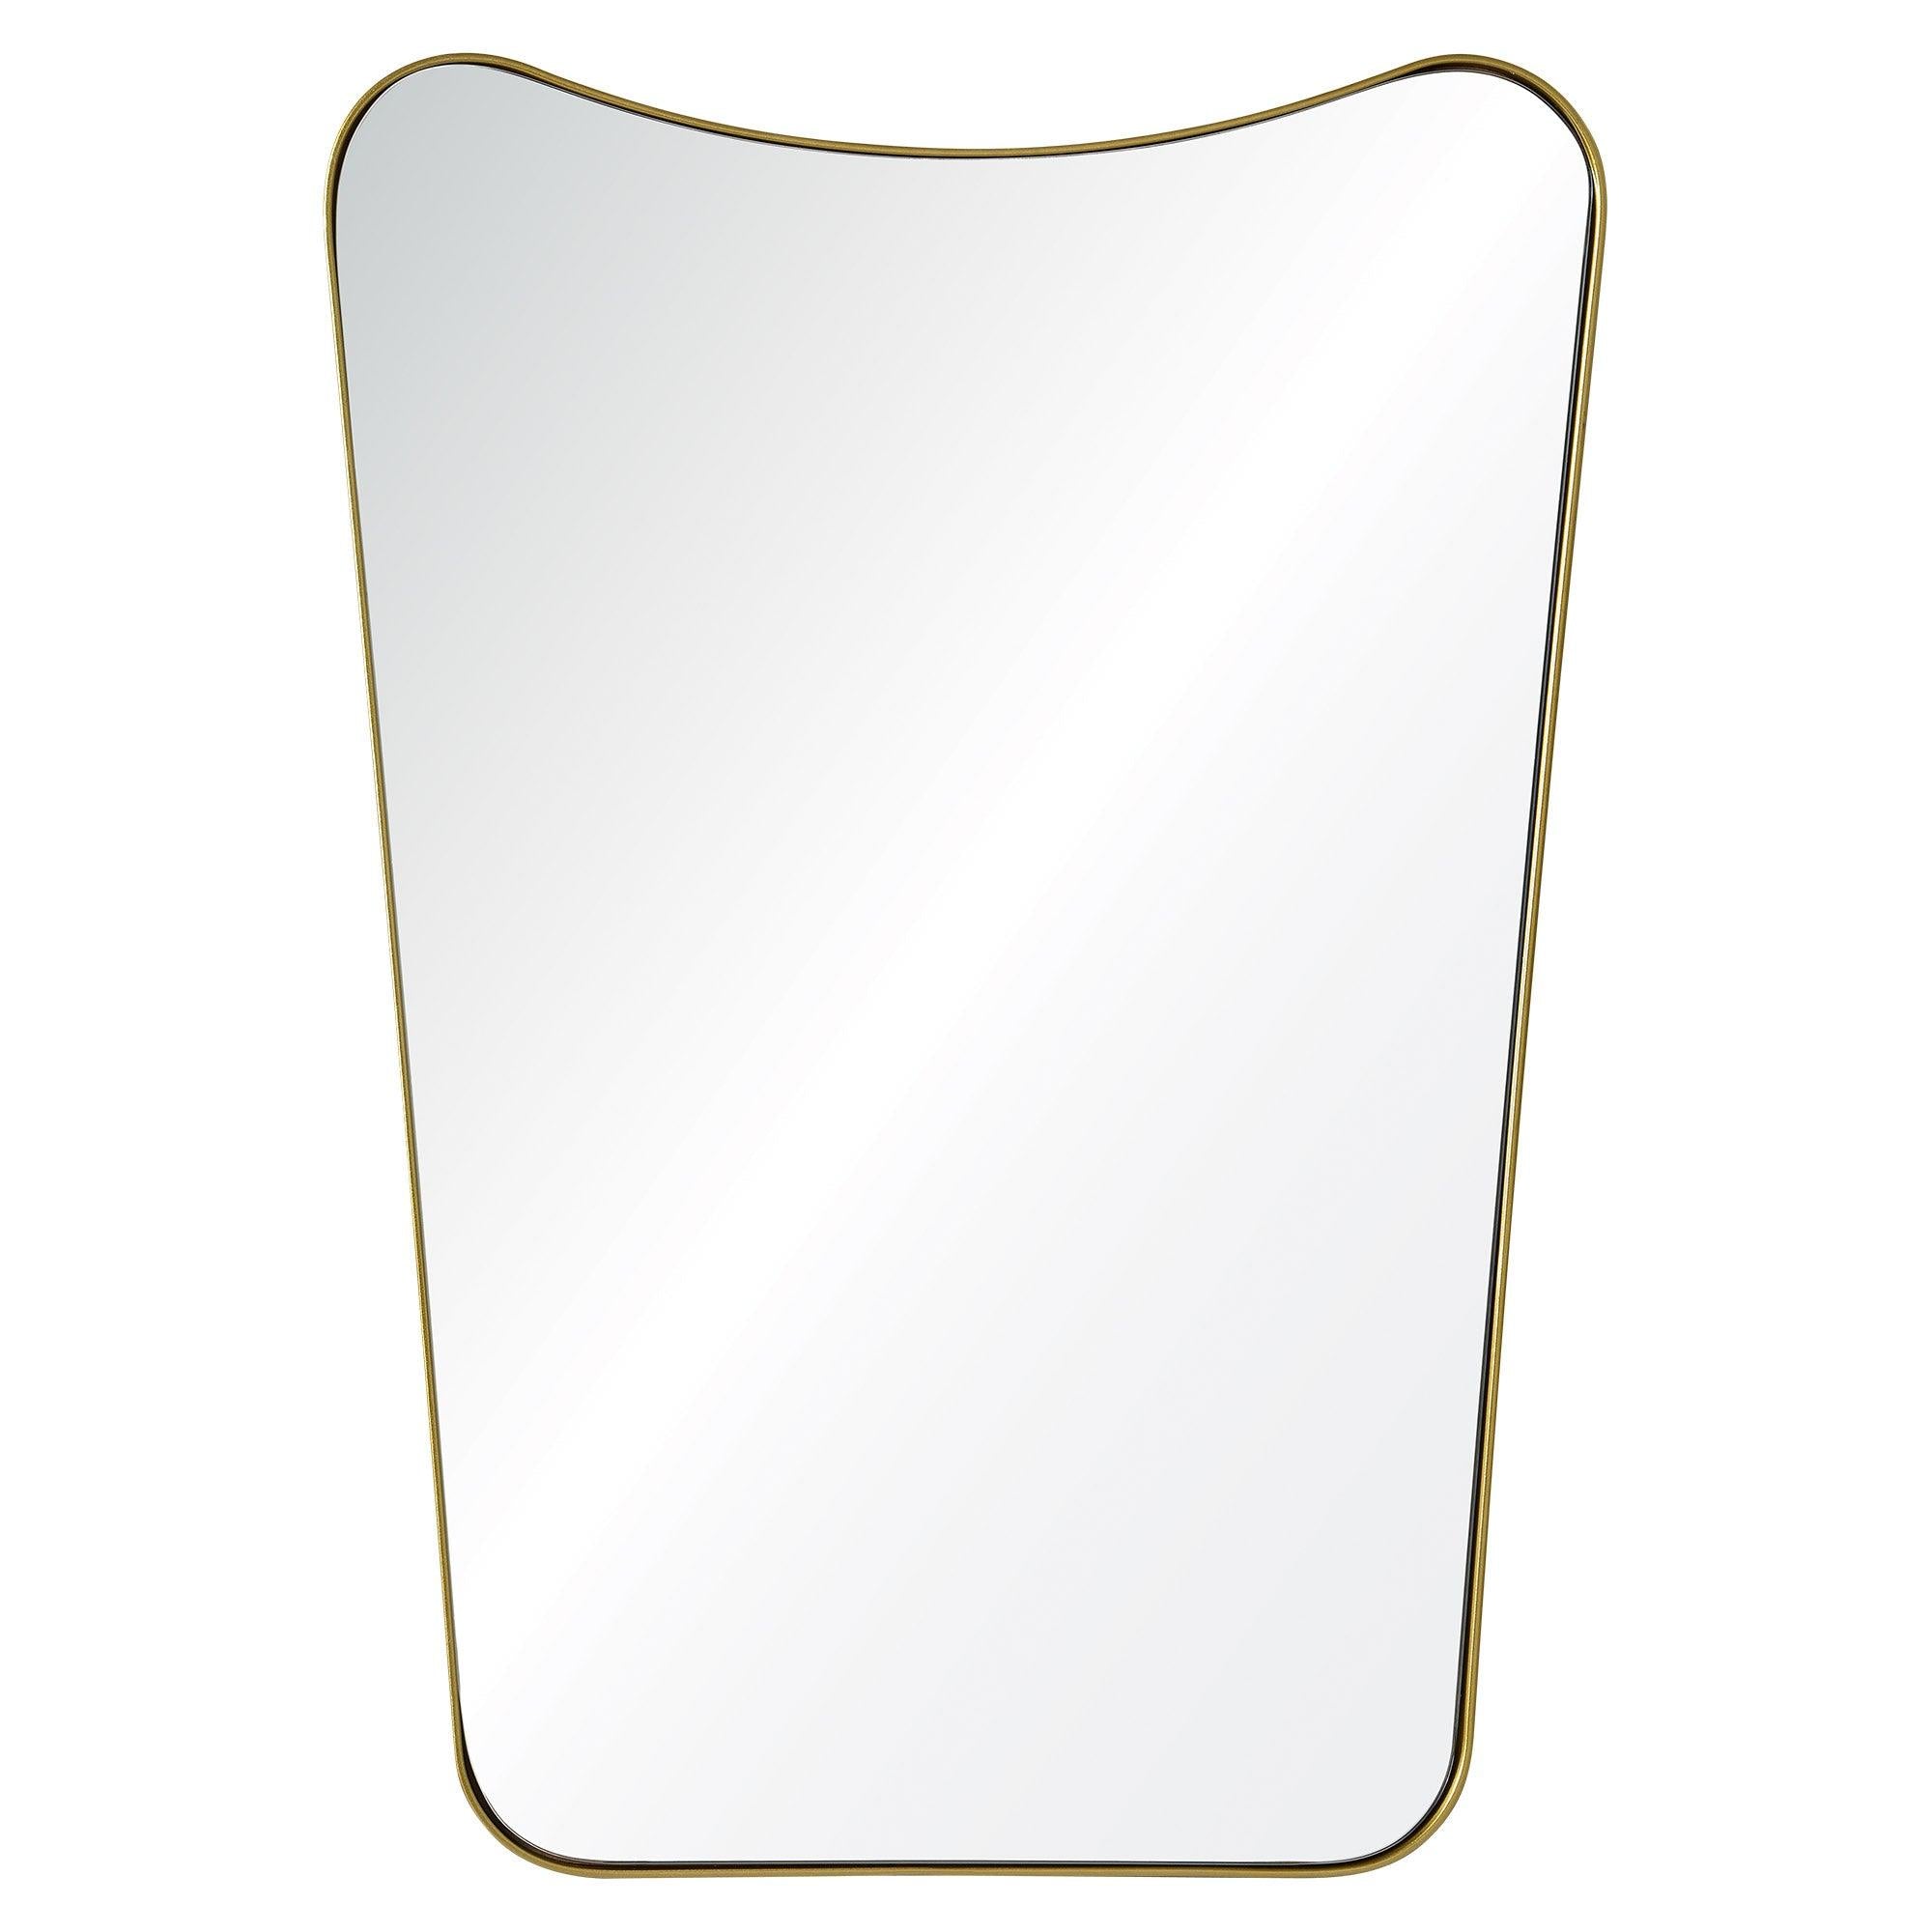 Tufa Gold Shield Mirror - Reimagine Designs - Mirror, Mirrors, new